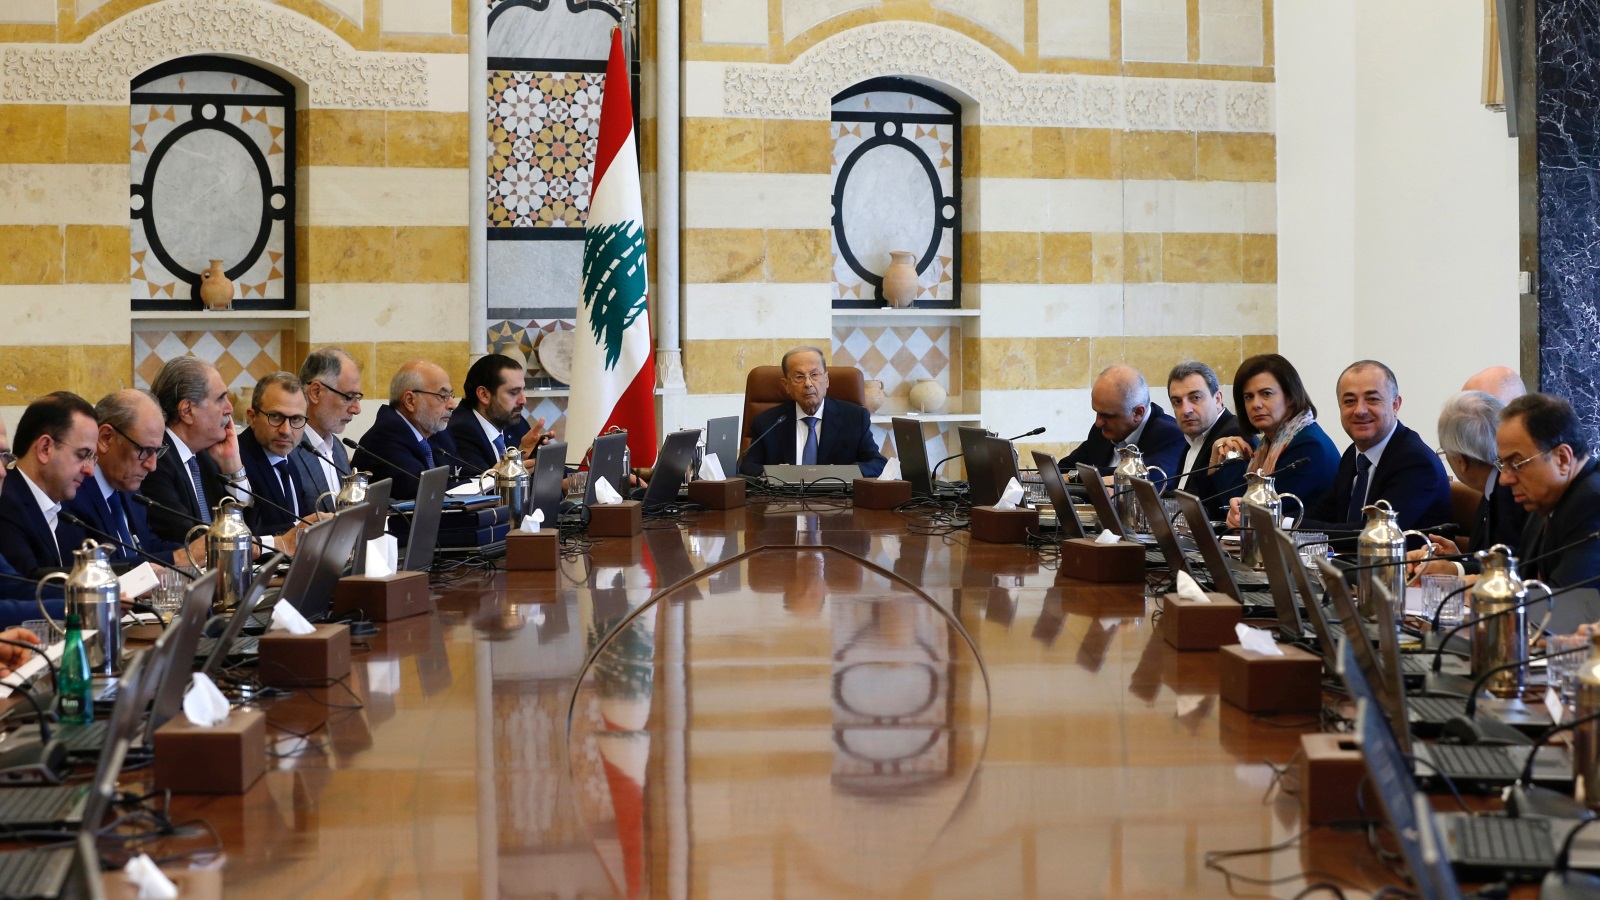 اجتماع مفصلي للحكومة اللبنانية اليوم على وقع احتجاجات قوية تعم البلاد (رويترز)